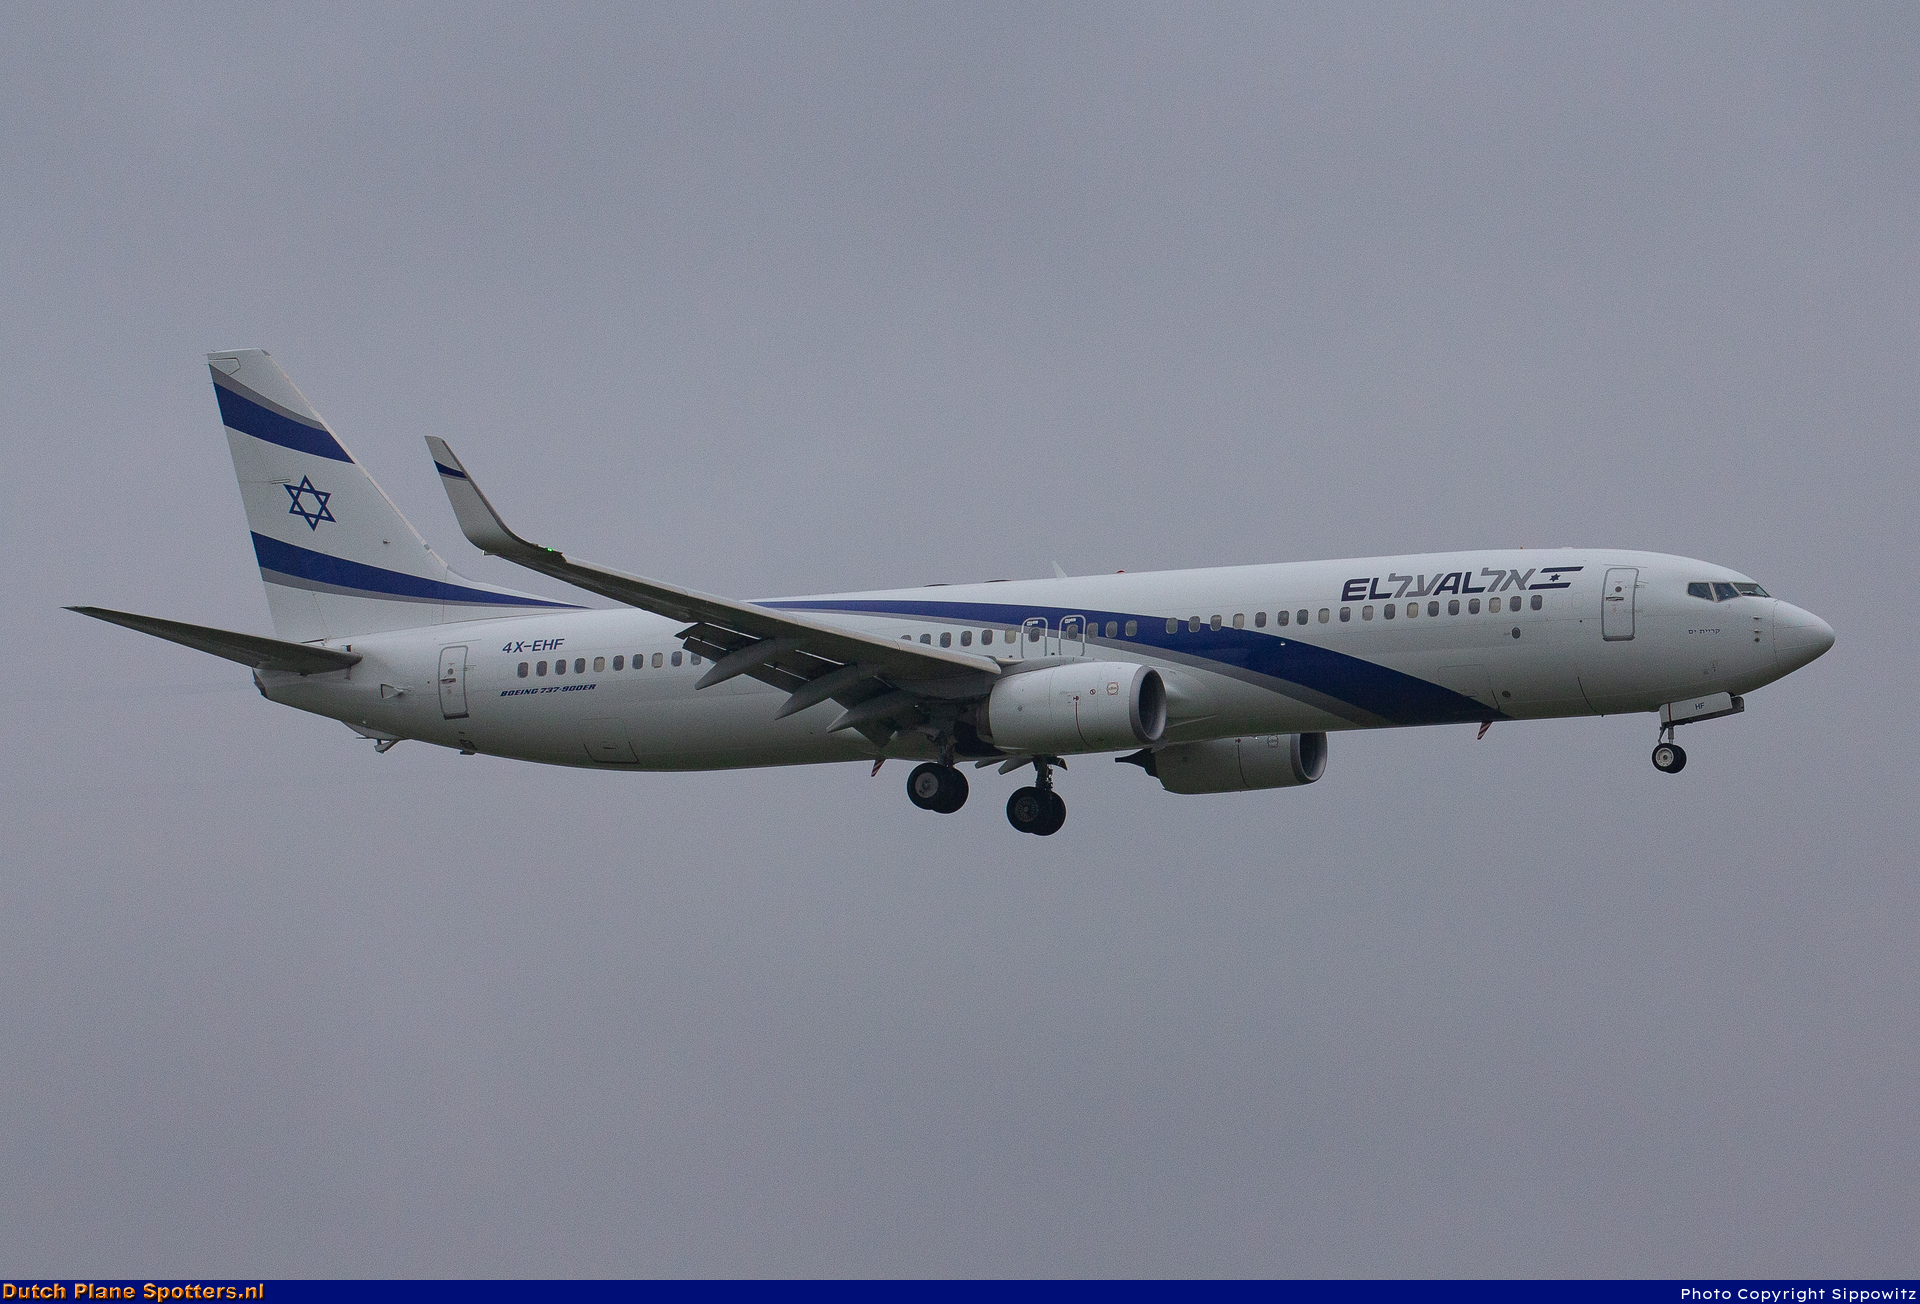 4X-EHF Boeing 737-900 El Al Israel Airlines by Sippowitz